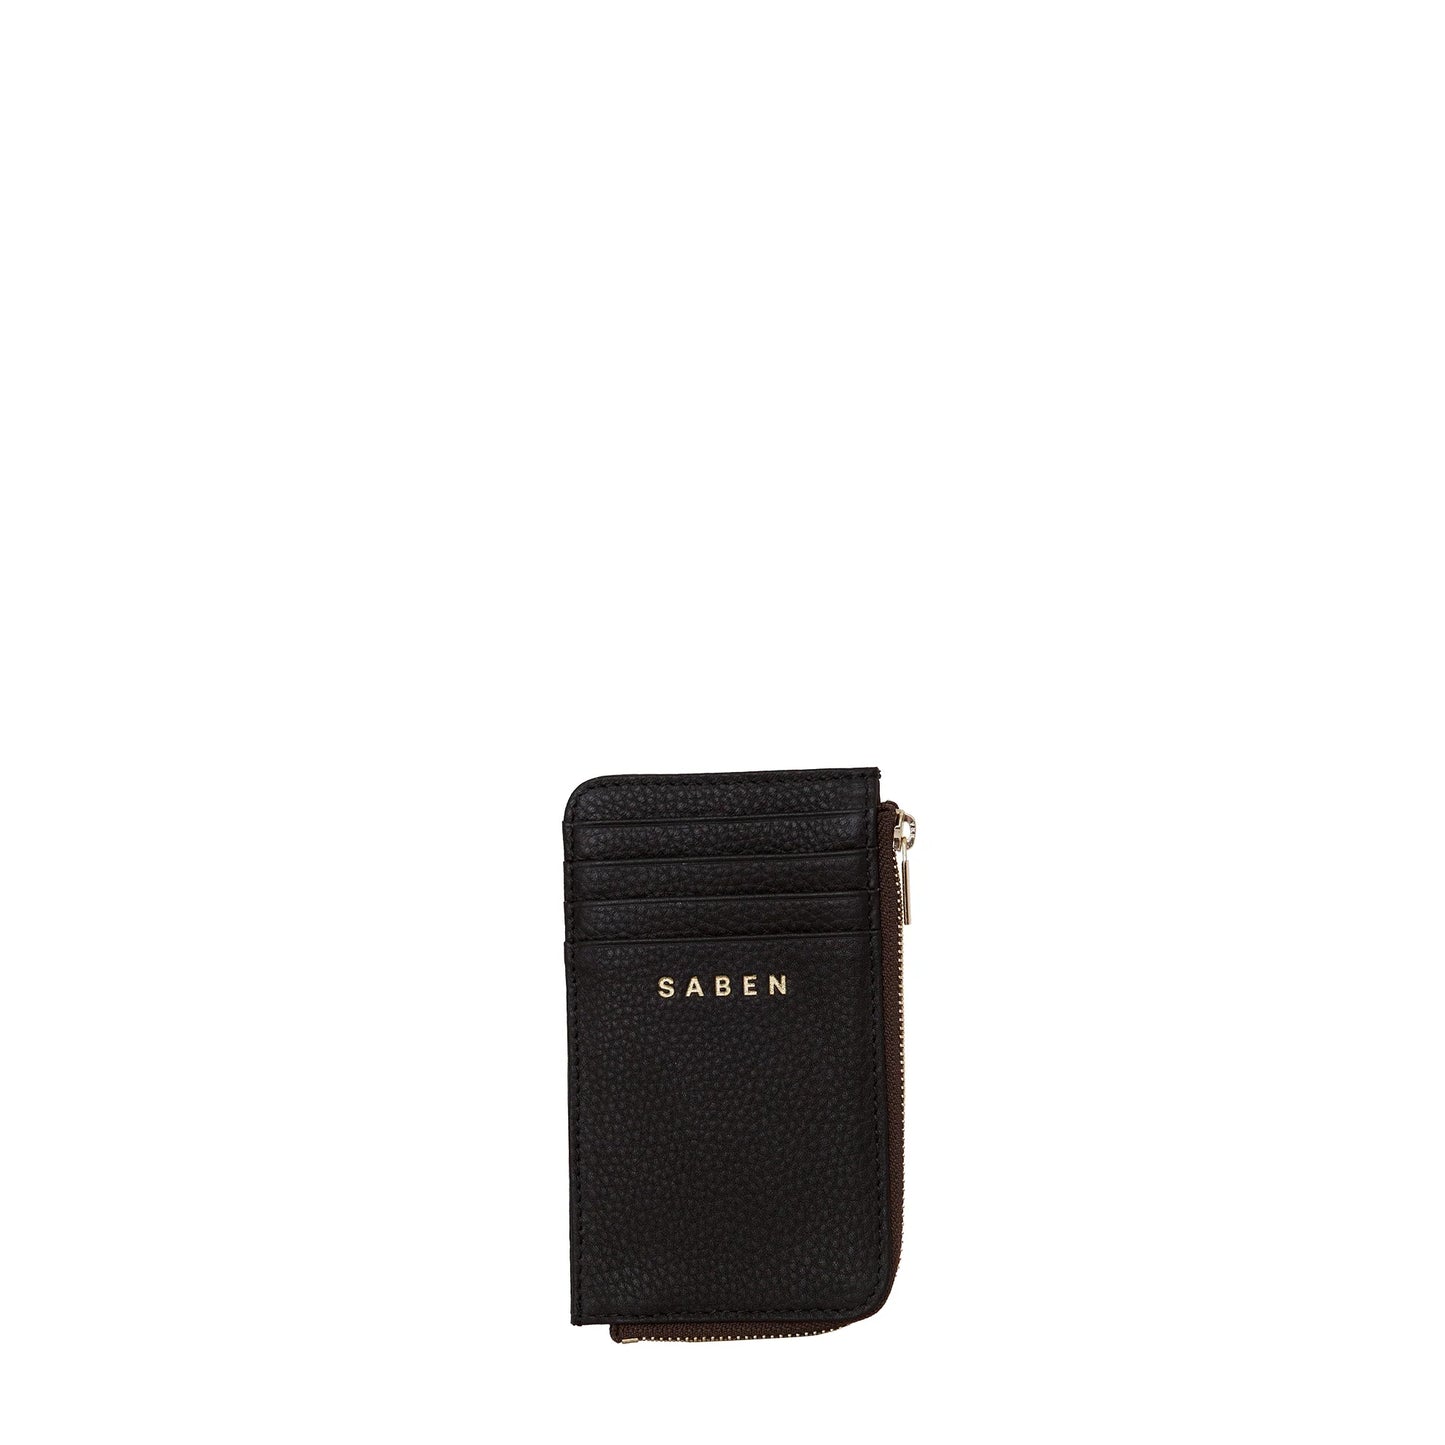 SABEN // Winona Card Holder BLACK